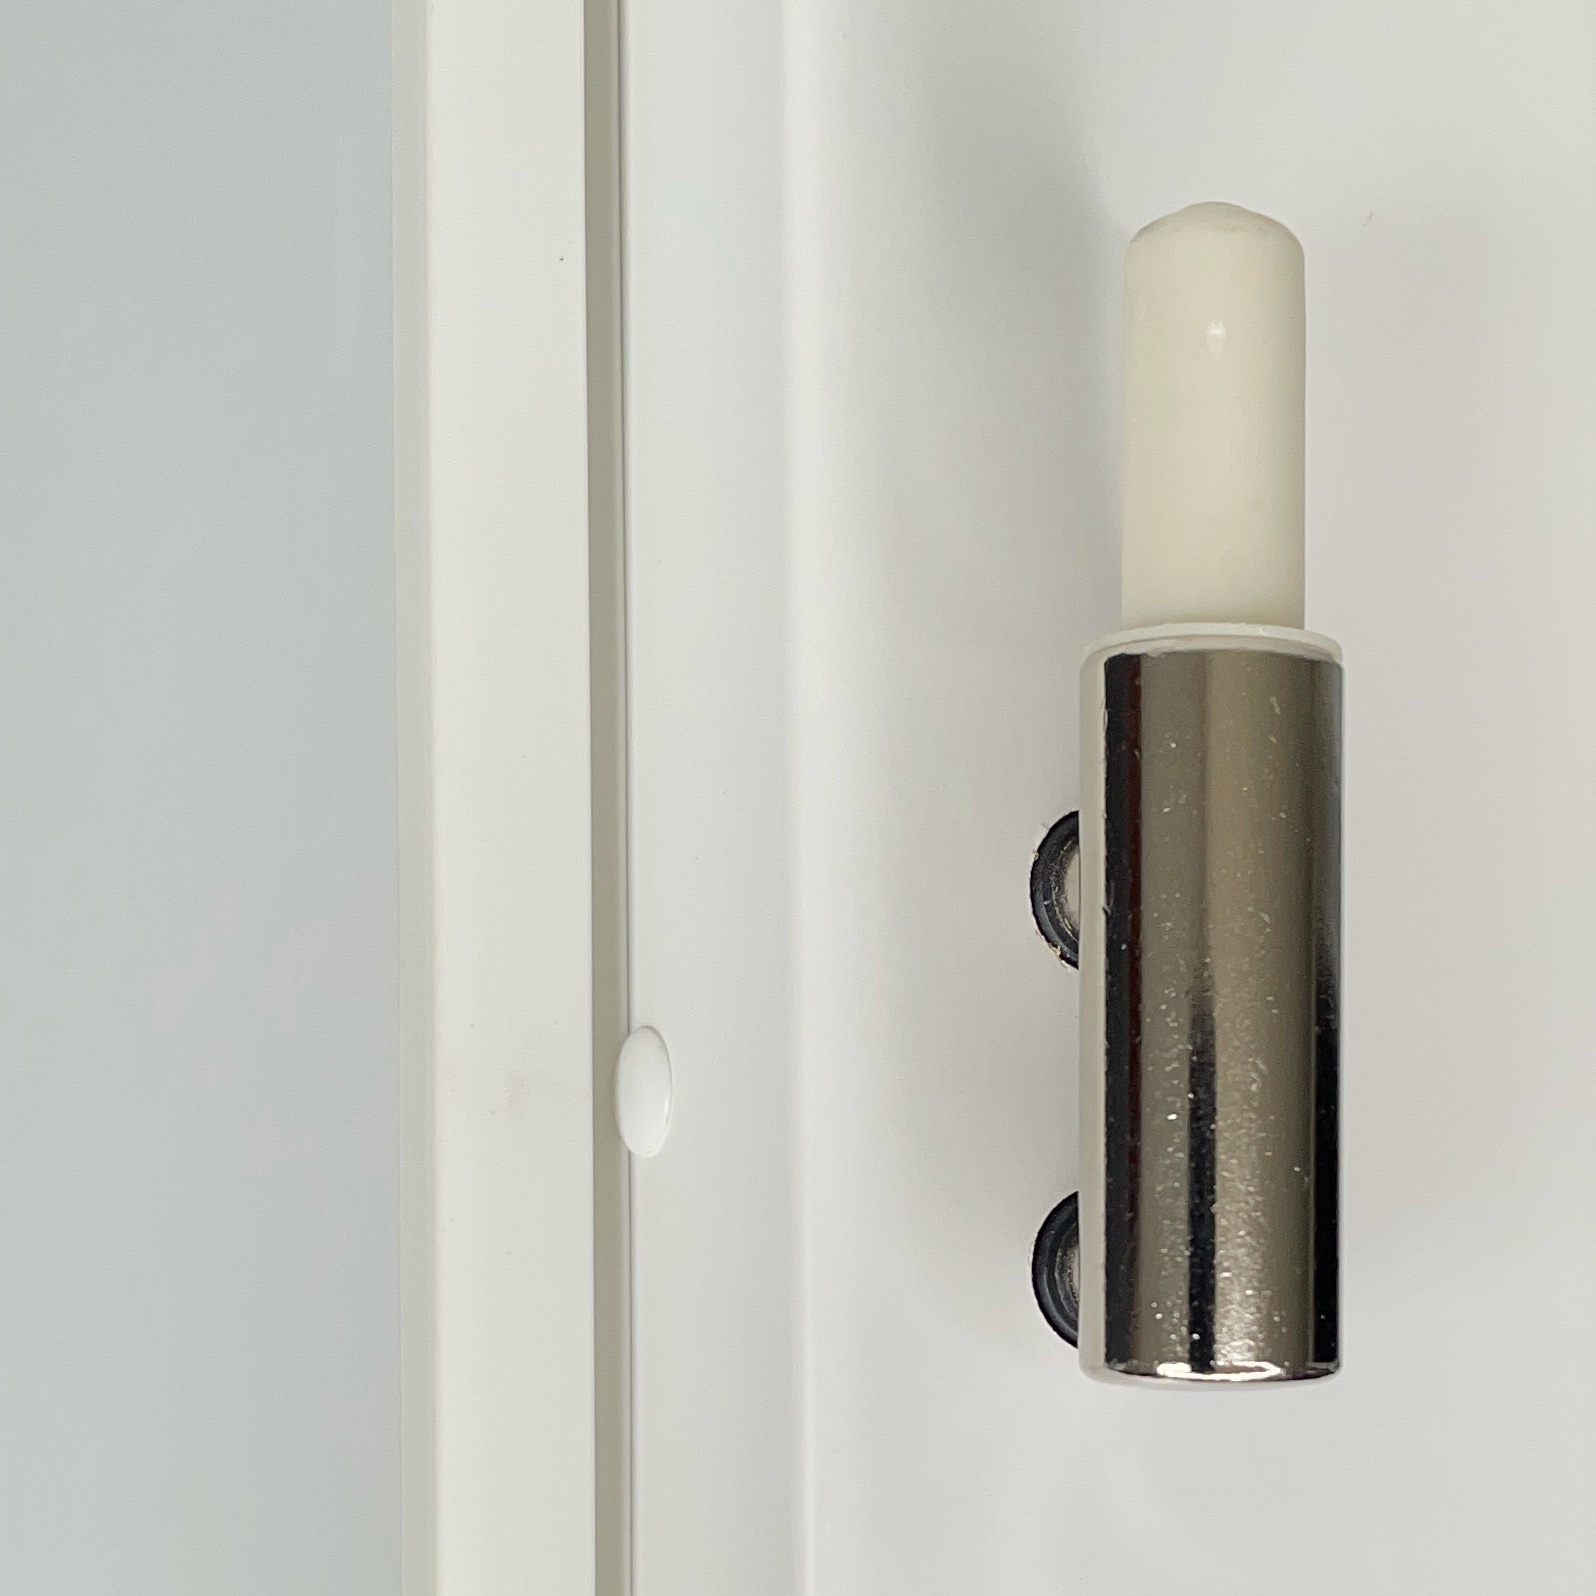 Zimmertür mit Zarge und Lichtausschnitt soft-weiß 2 breite Rillen Eckkante - Modell Designtür QB21LAM